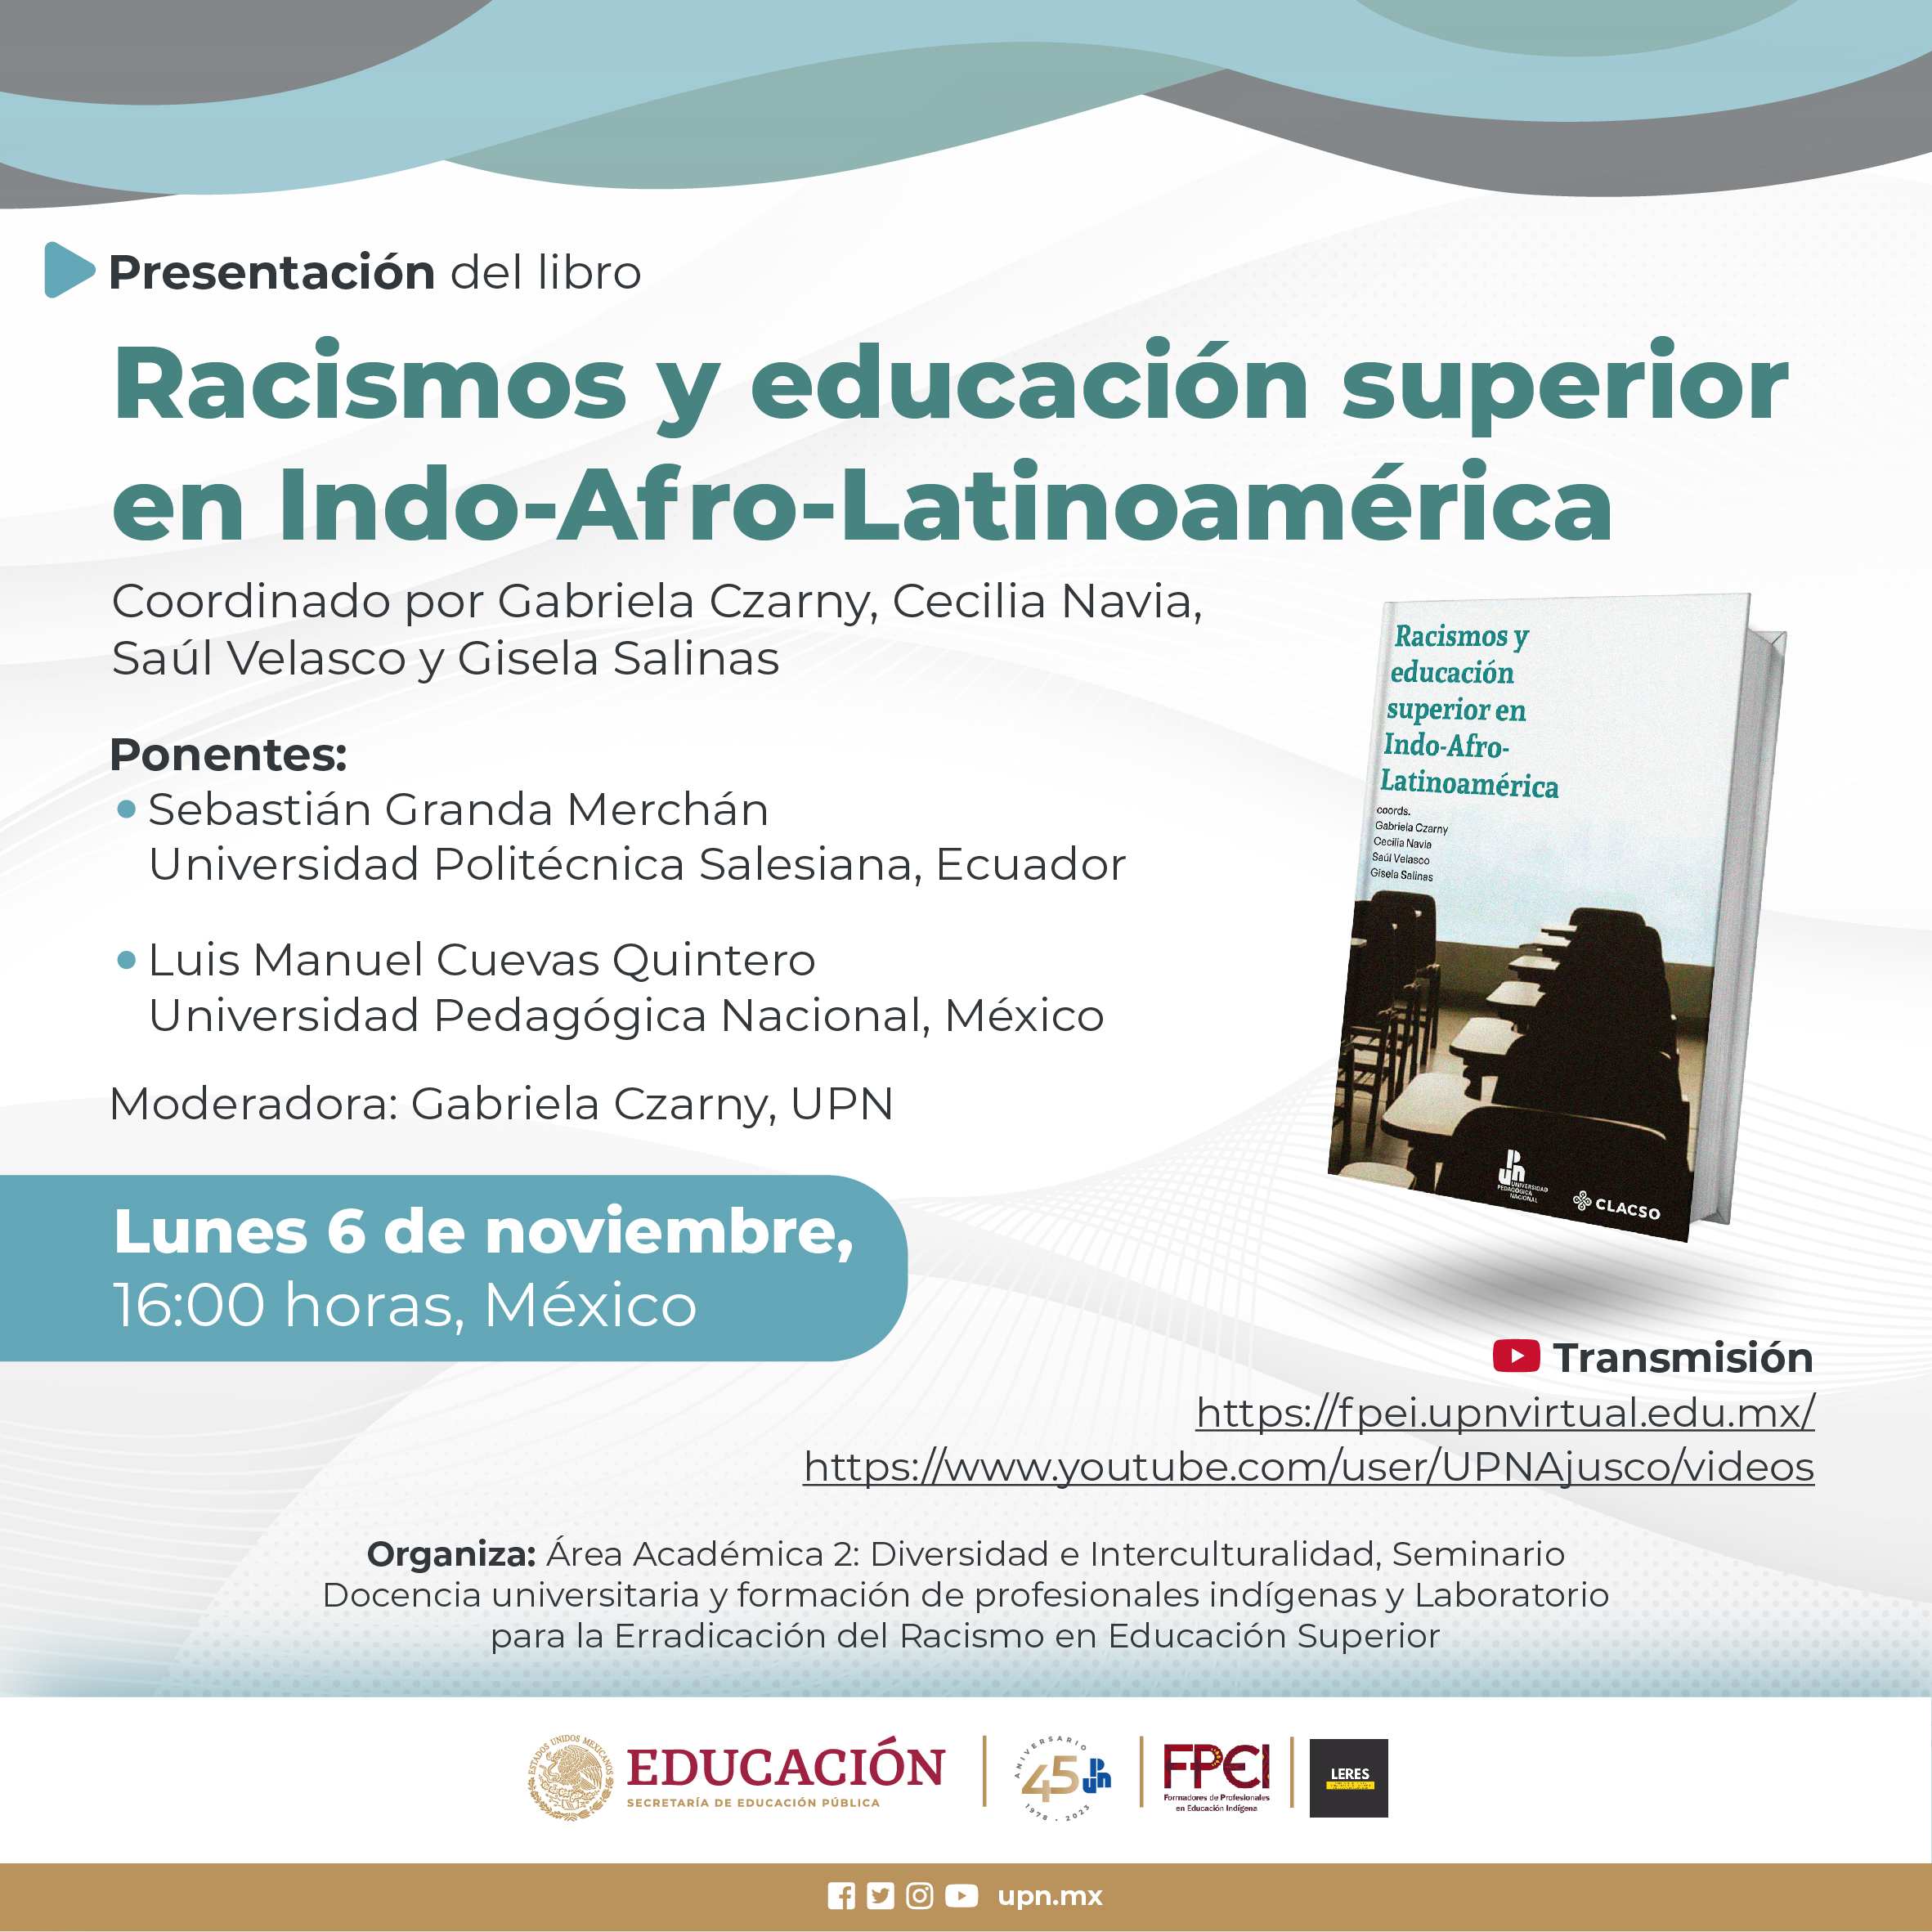 Racismos y Educación Superior en Indo-Afro-Latinoamérica